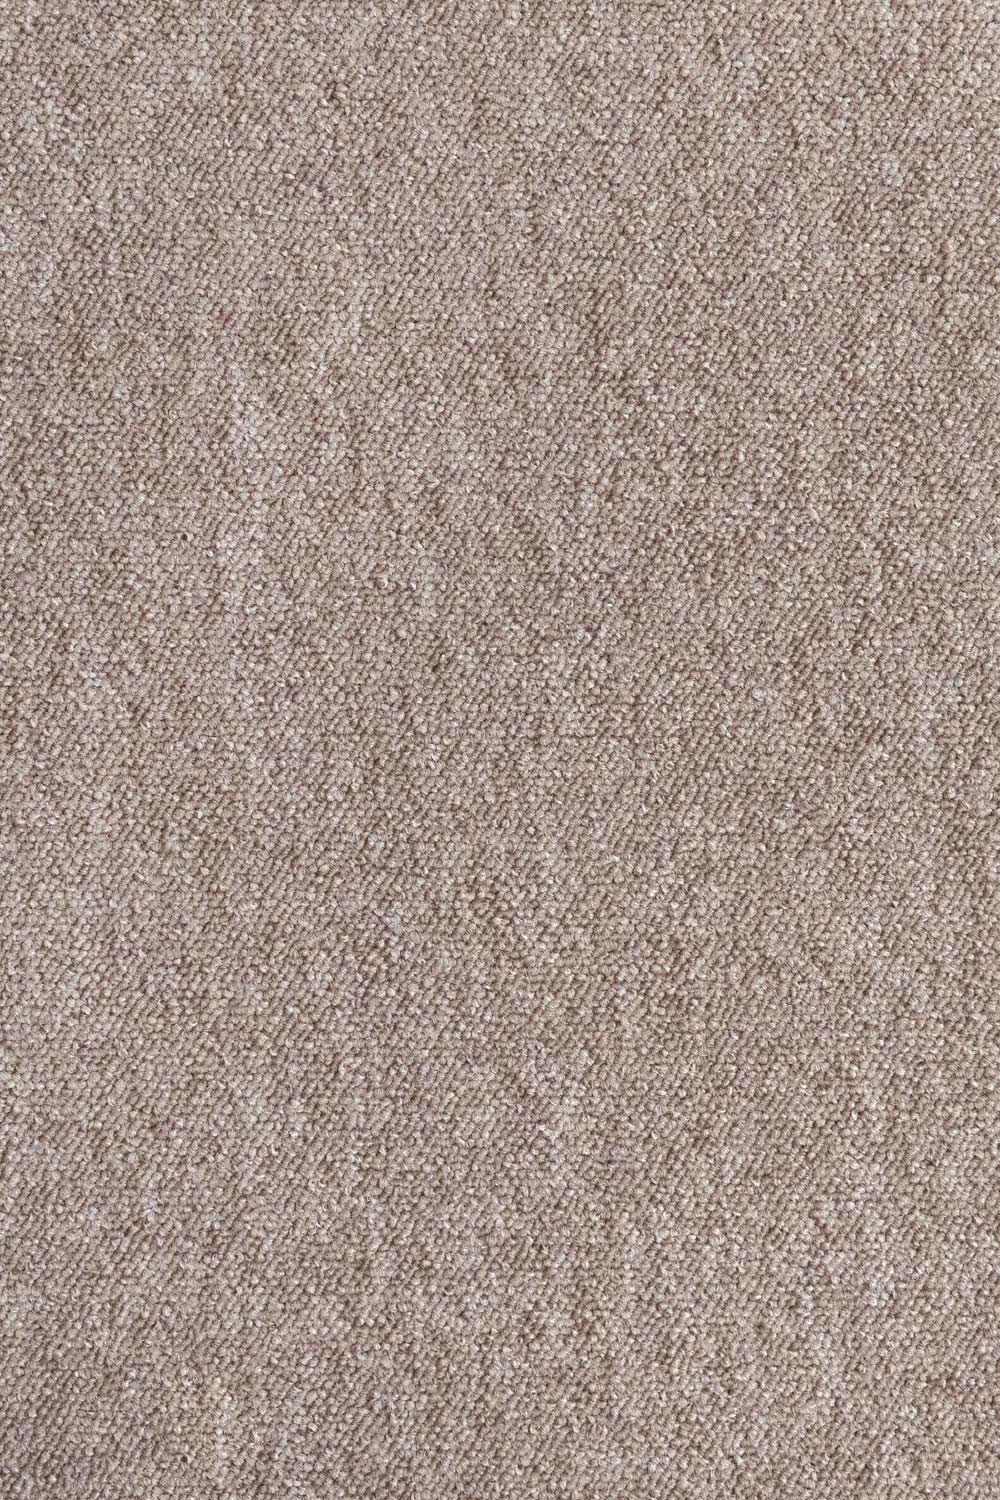 Metrážový koberec Lyon Solid 70 500 cm